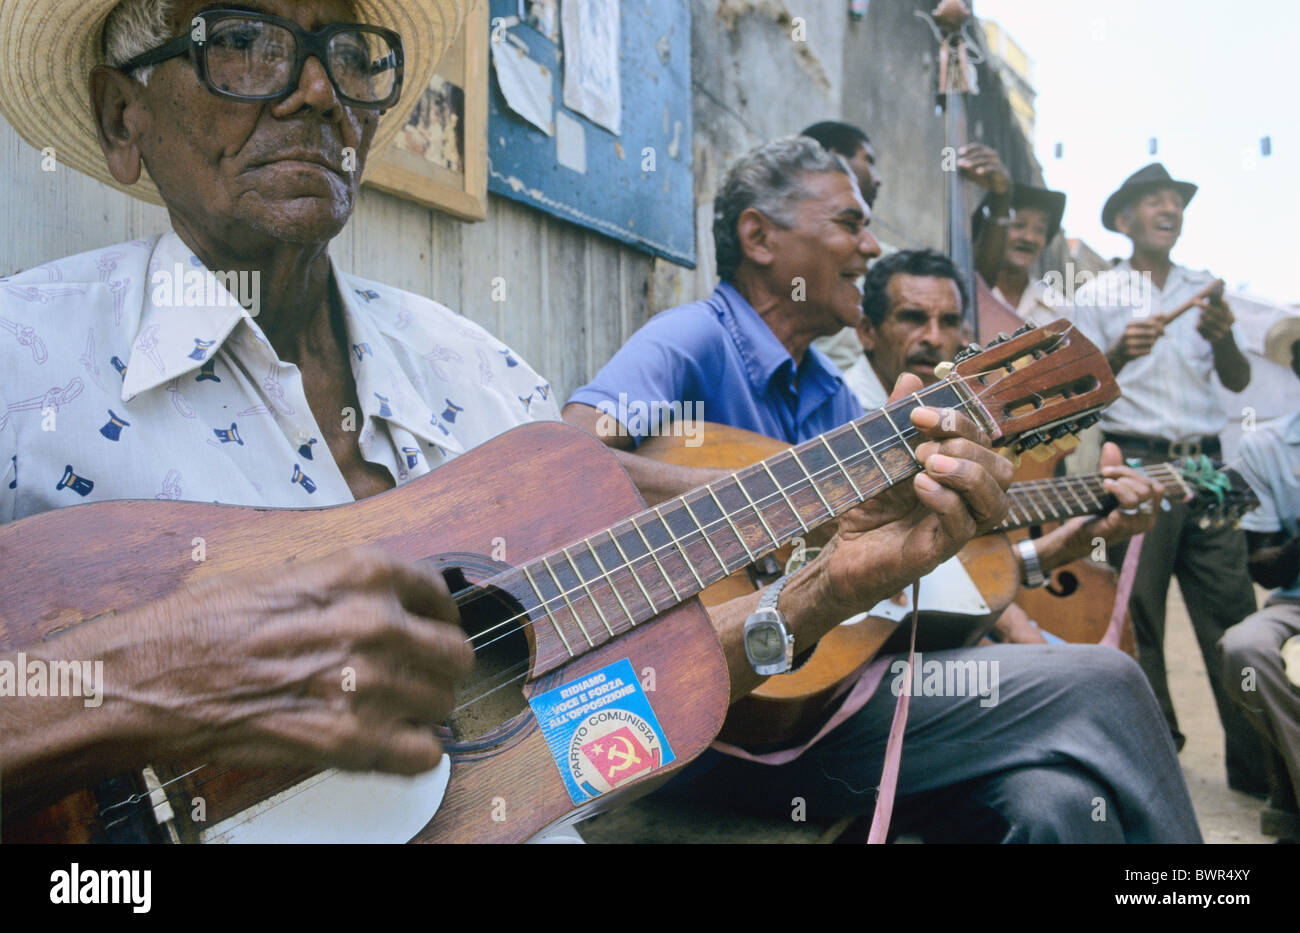 Cuba Trinidad la ciudad de Trinidad ensemble hombres ancianos tocando música tradicional cubana turistas sticker comu Foto de stock